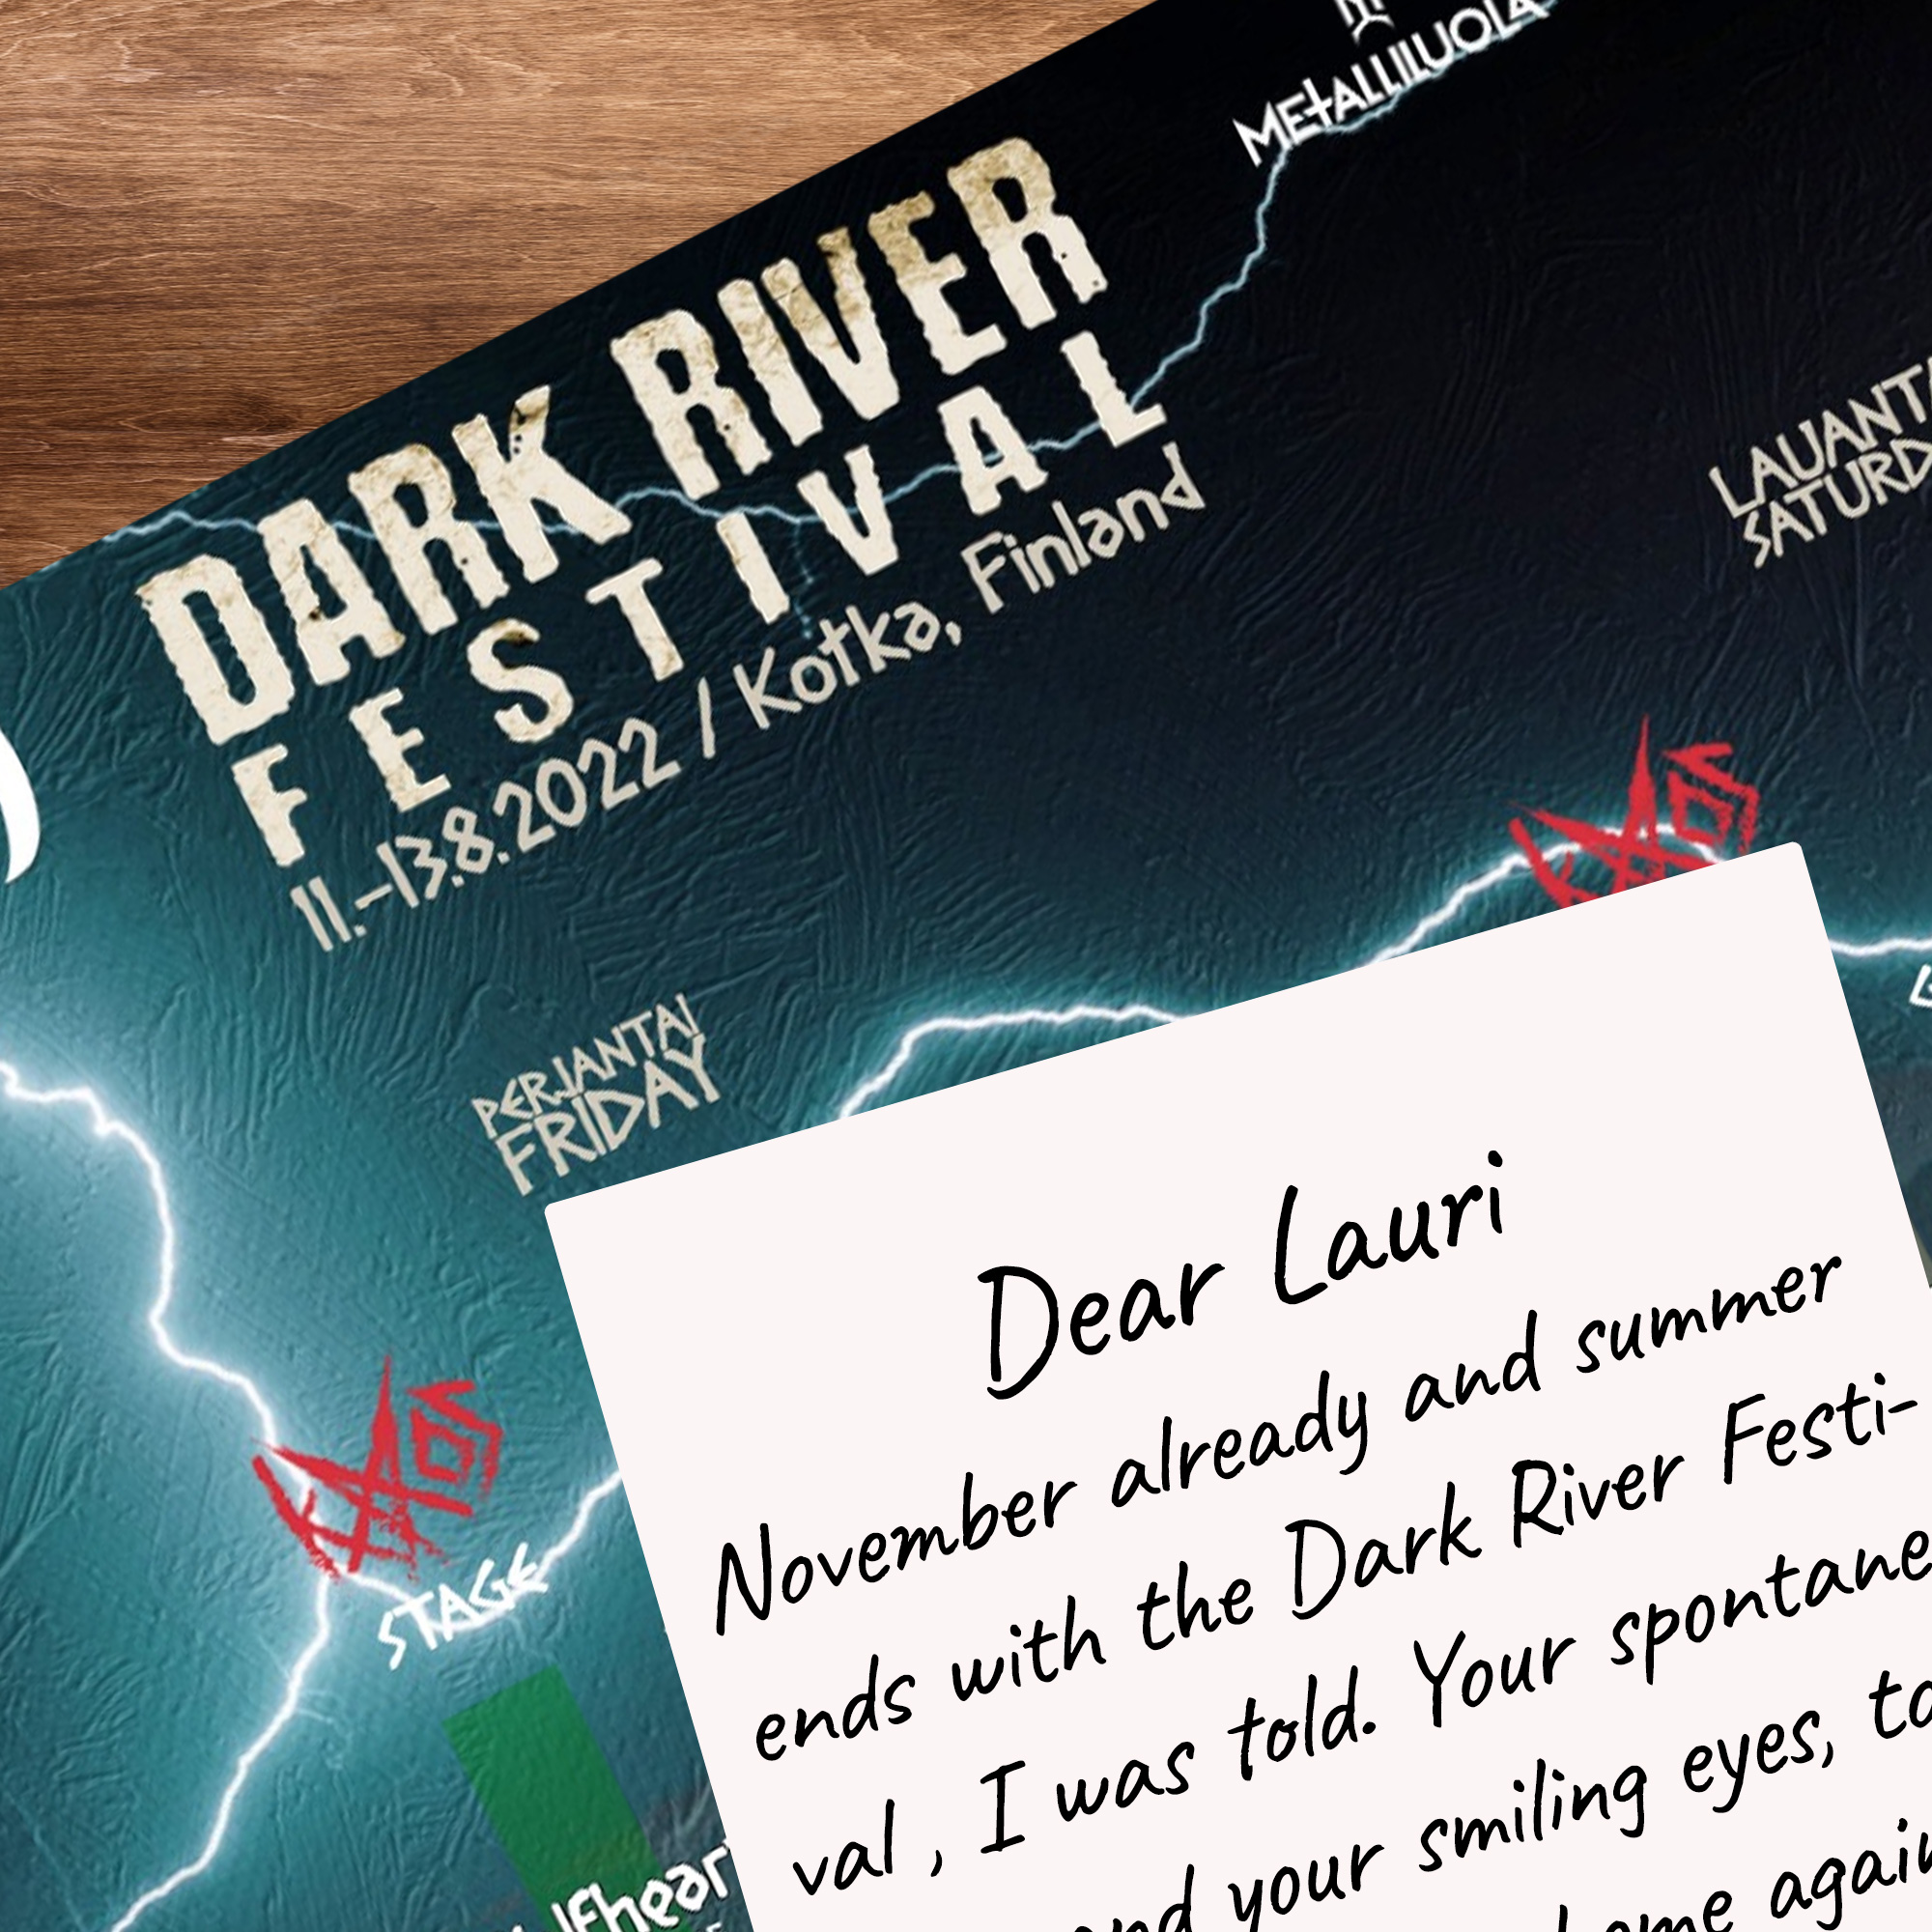 Dark River Festival 2022 